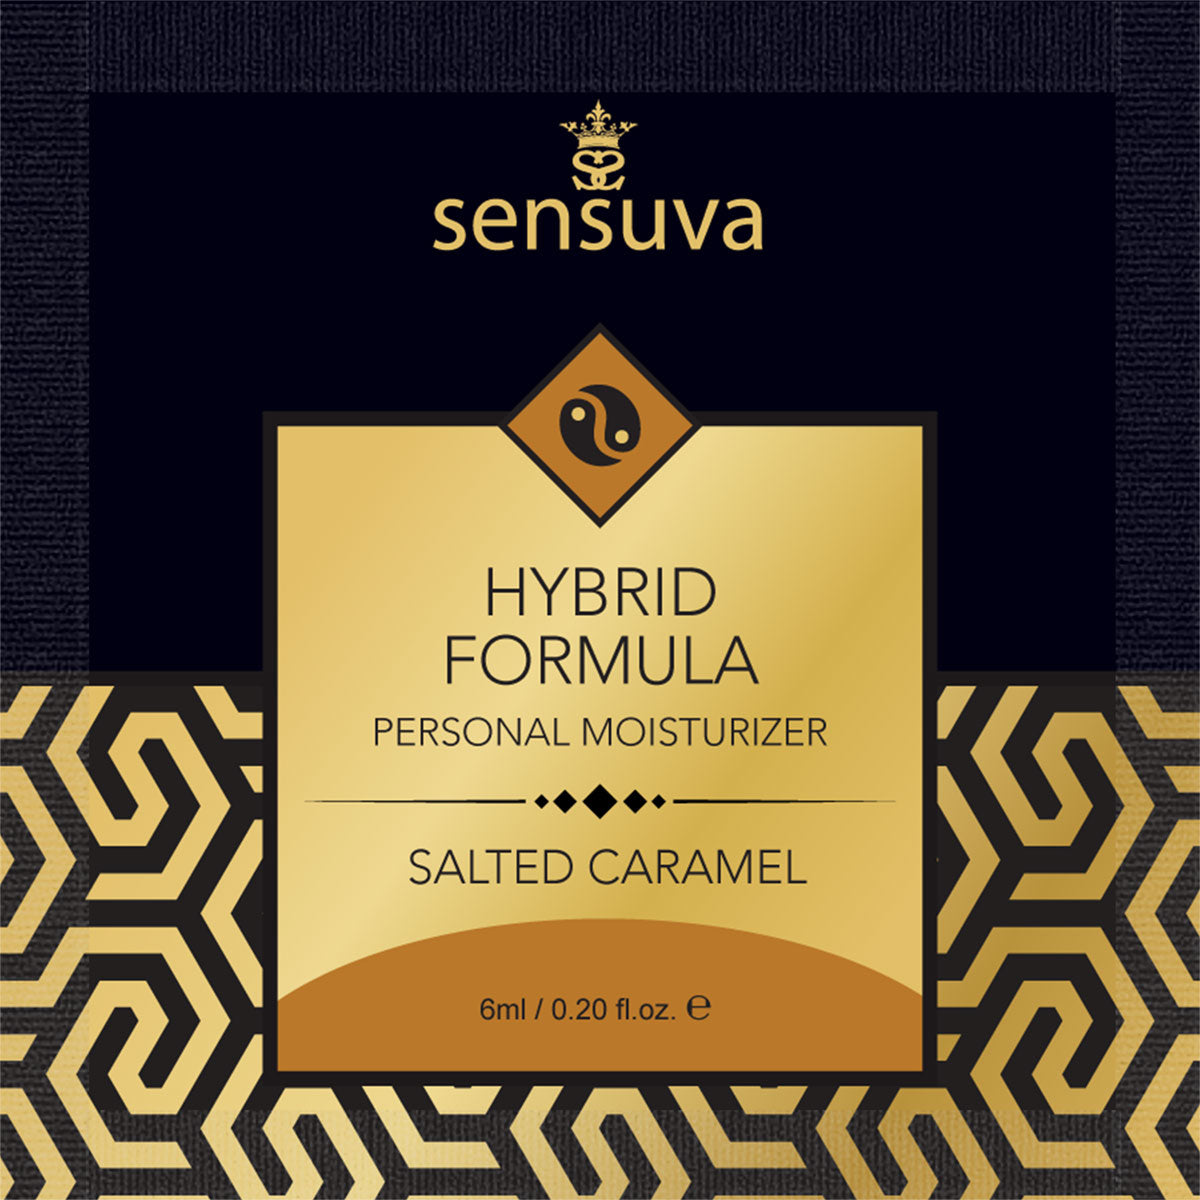 Sensuva Hybrid Formula – Personal Moisturizer – Foils and Display – 100 pc – 0.2 oz